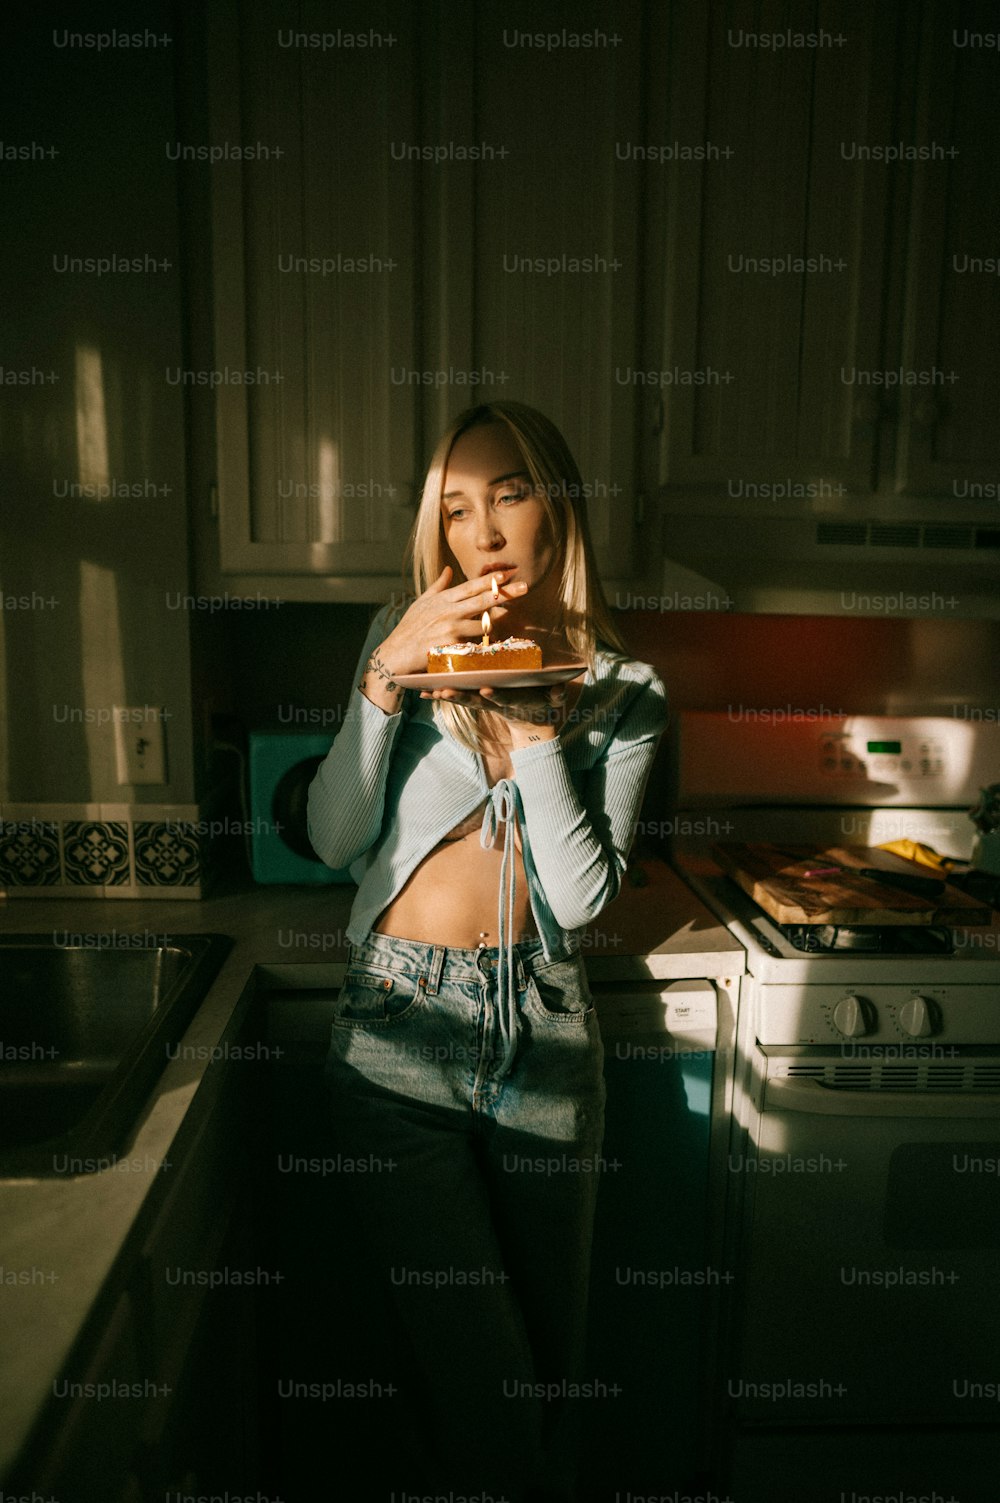 Una mujer parada en una cocina sosteniendo una pizza